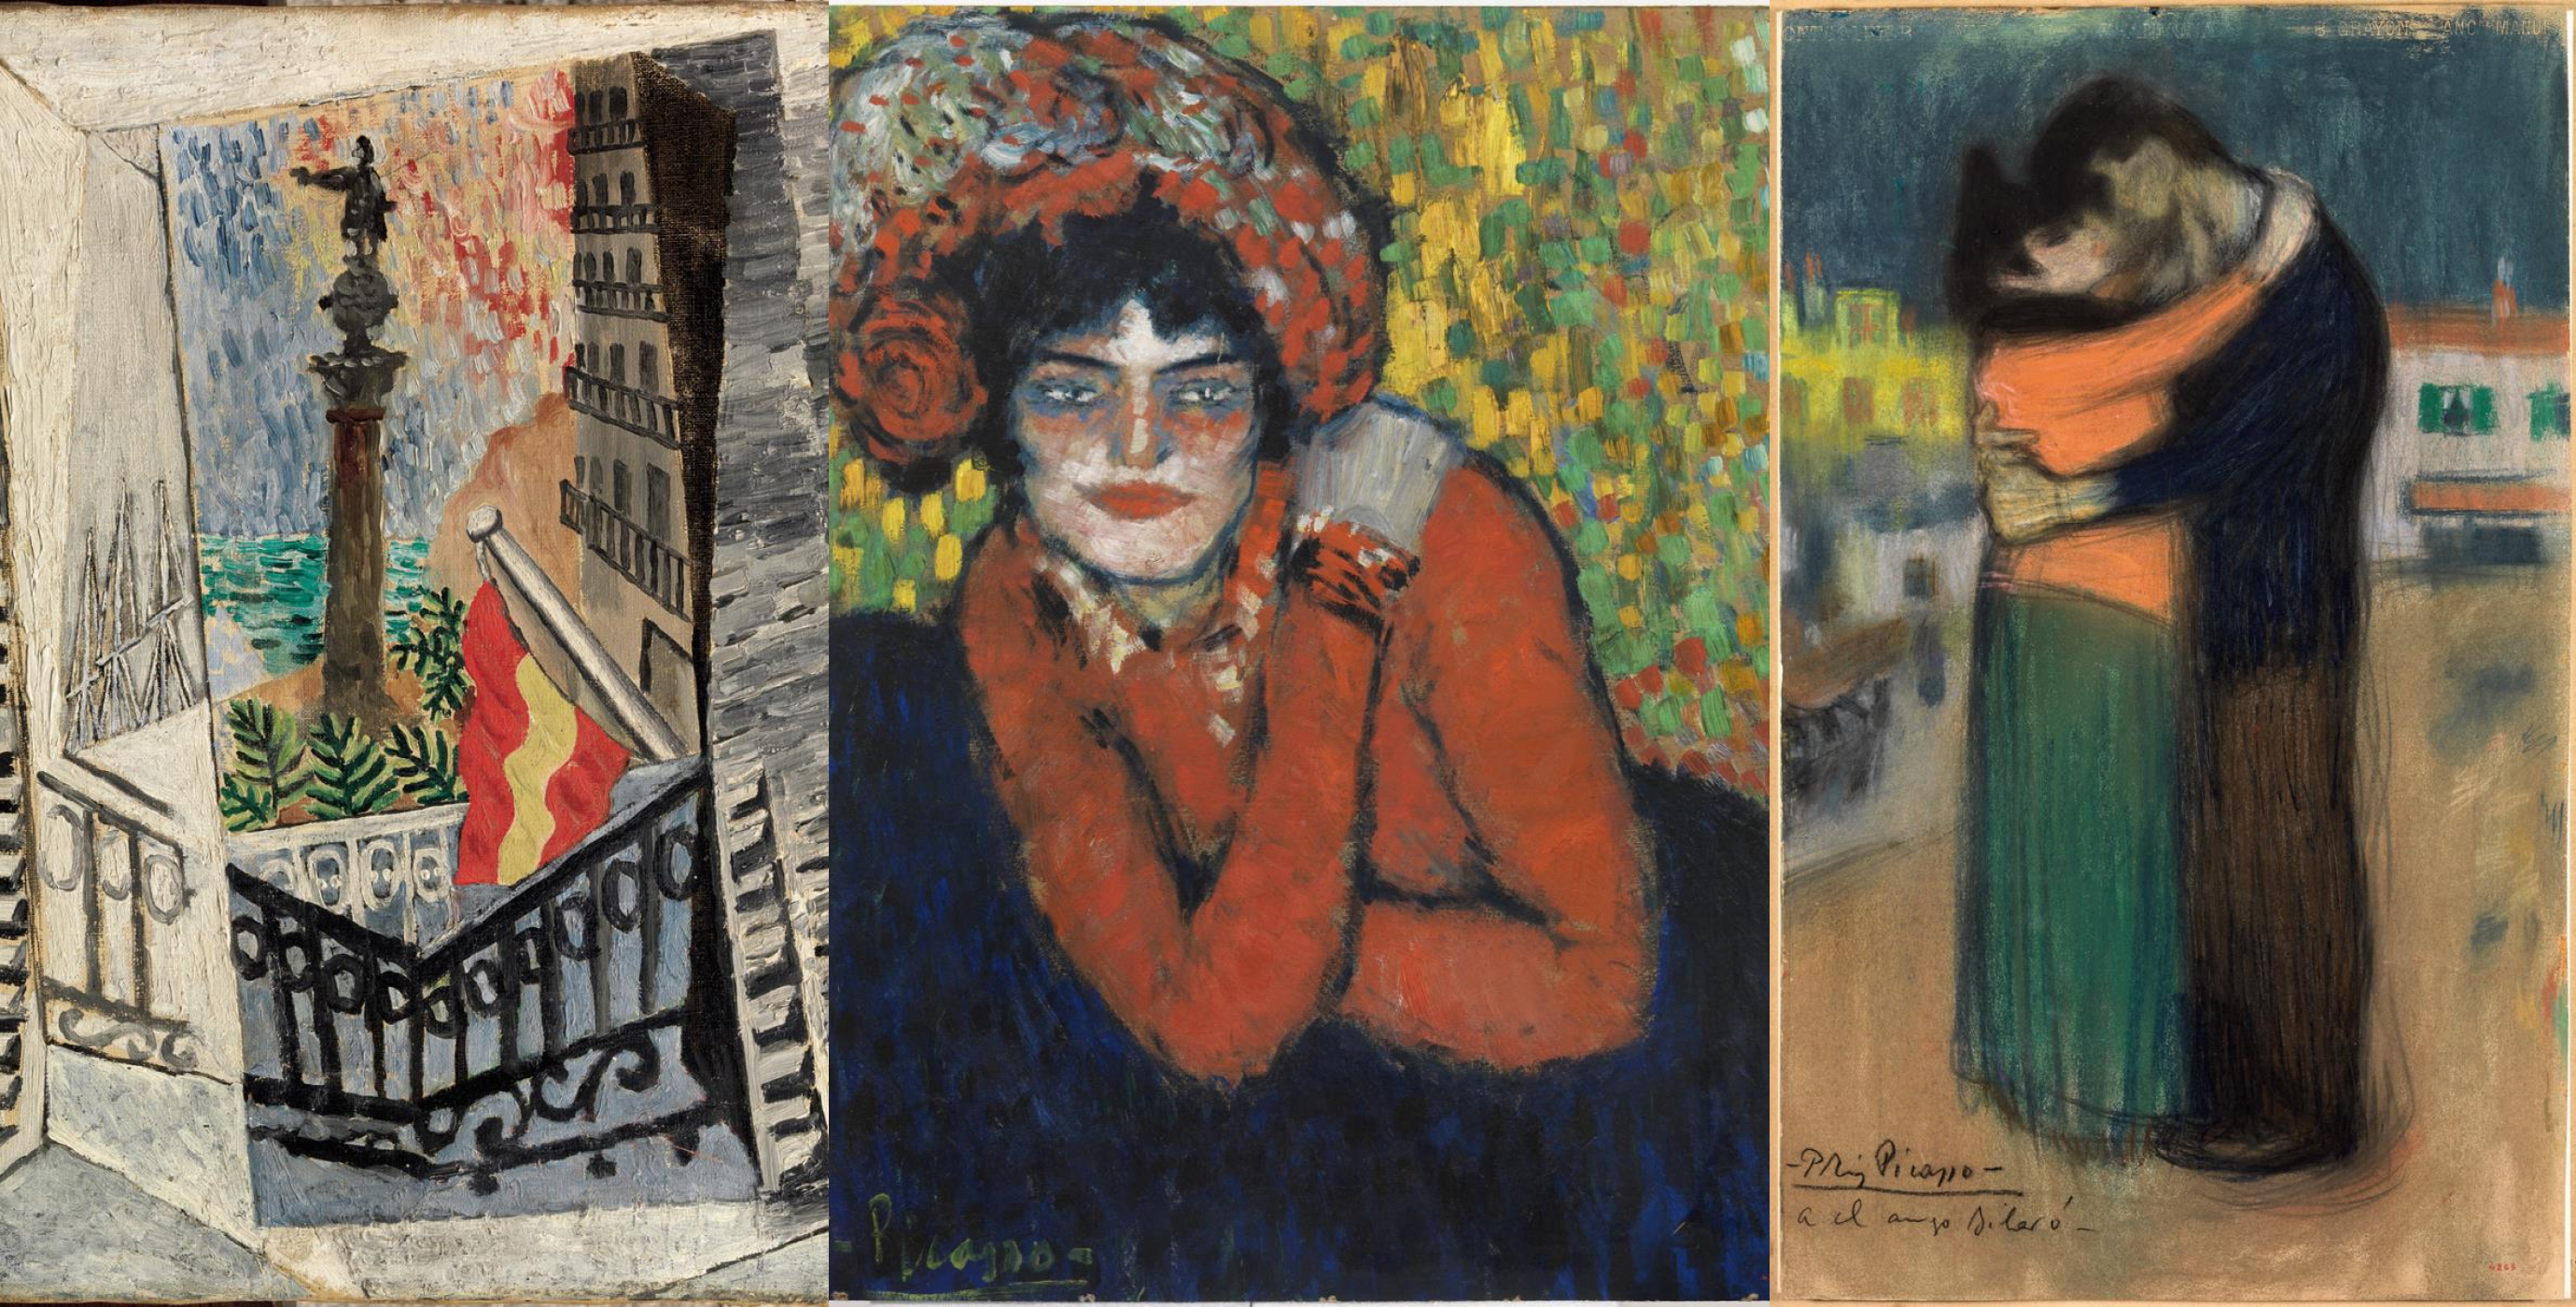 Музей Пабло Пикассо в Париже опубликовал новый онлайн-архив